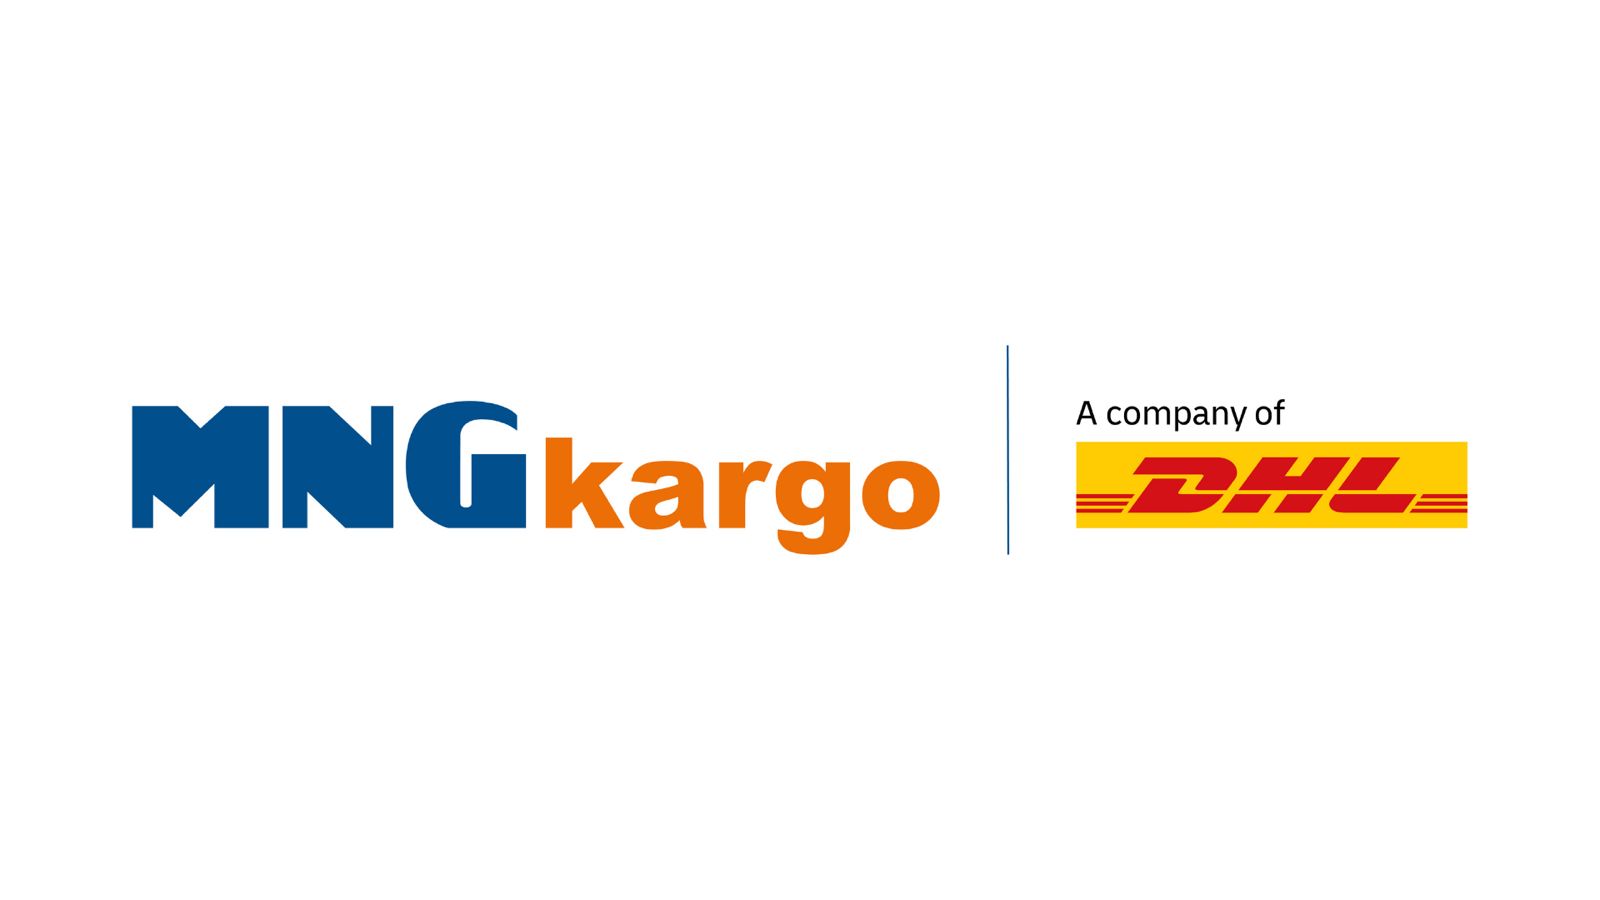 MNG Kargo’nun logosu yenilendi - Lojistik haberleri, nakliye, kargo ...